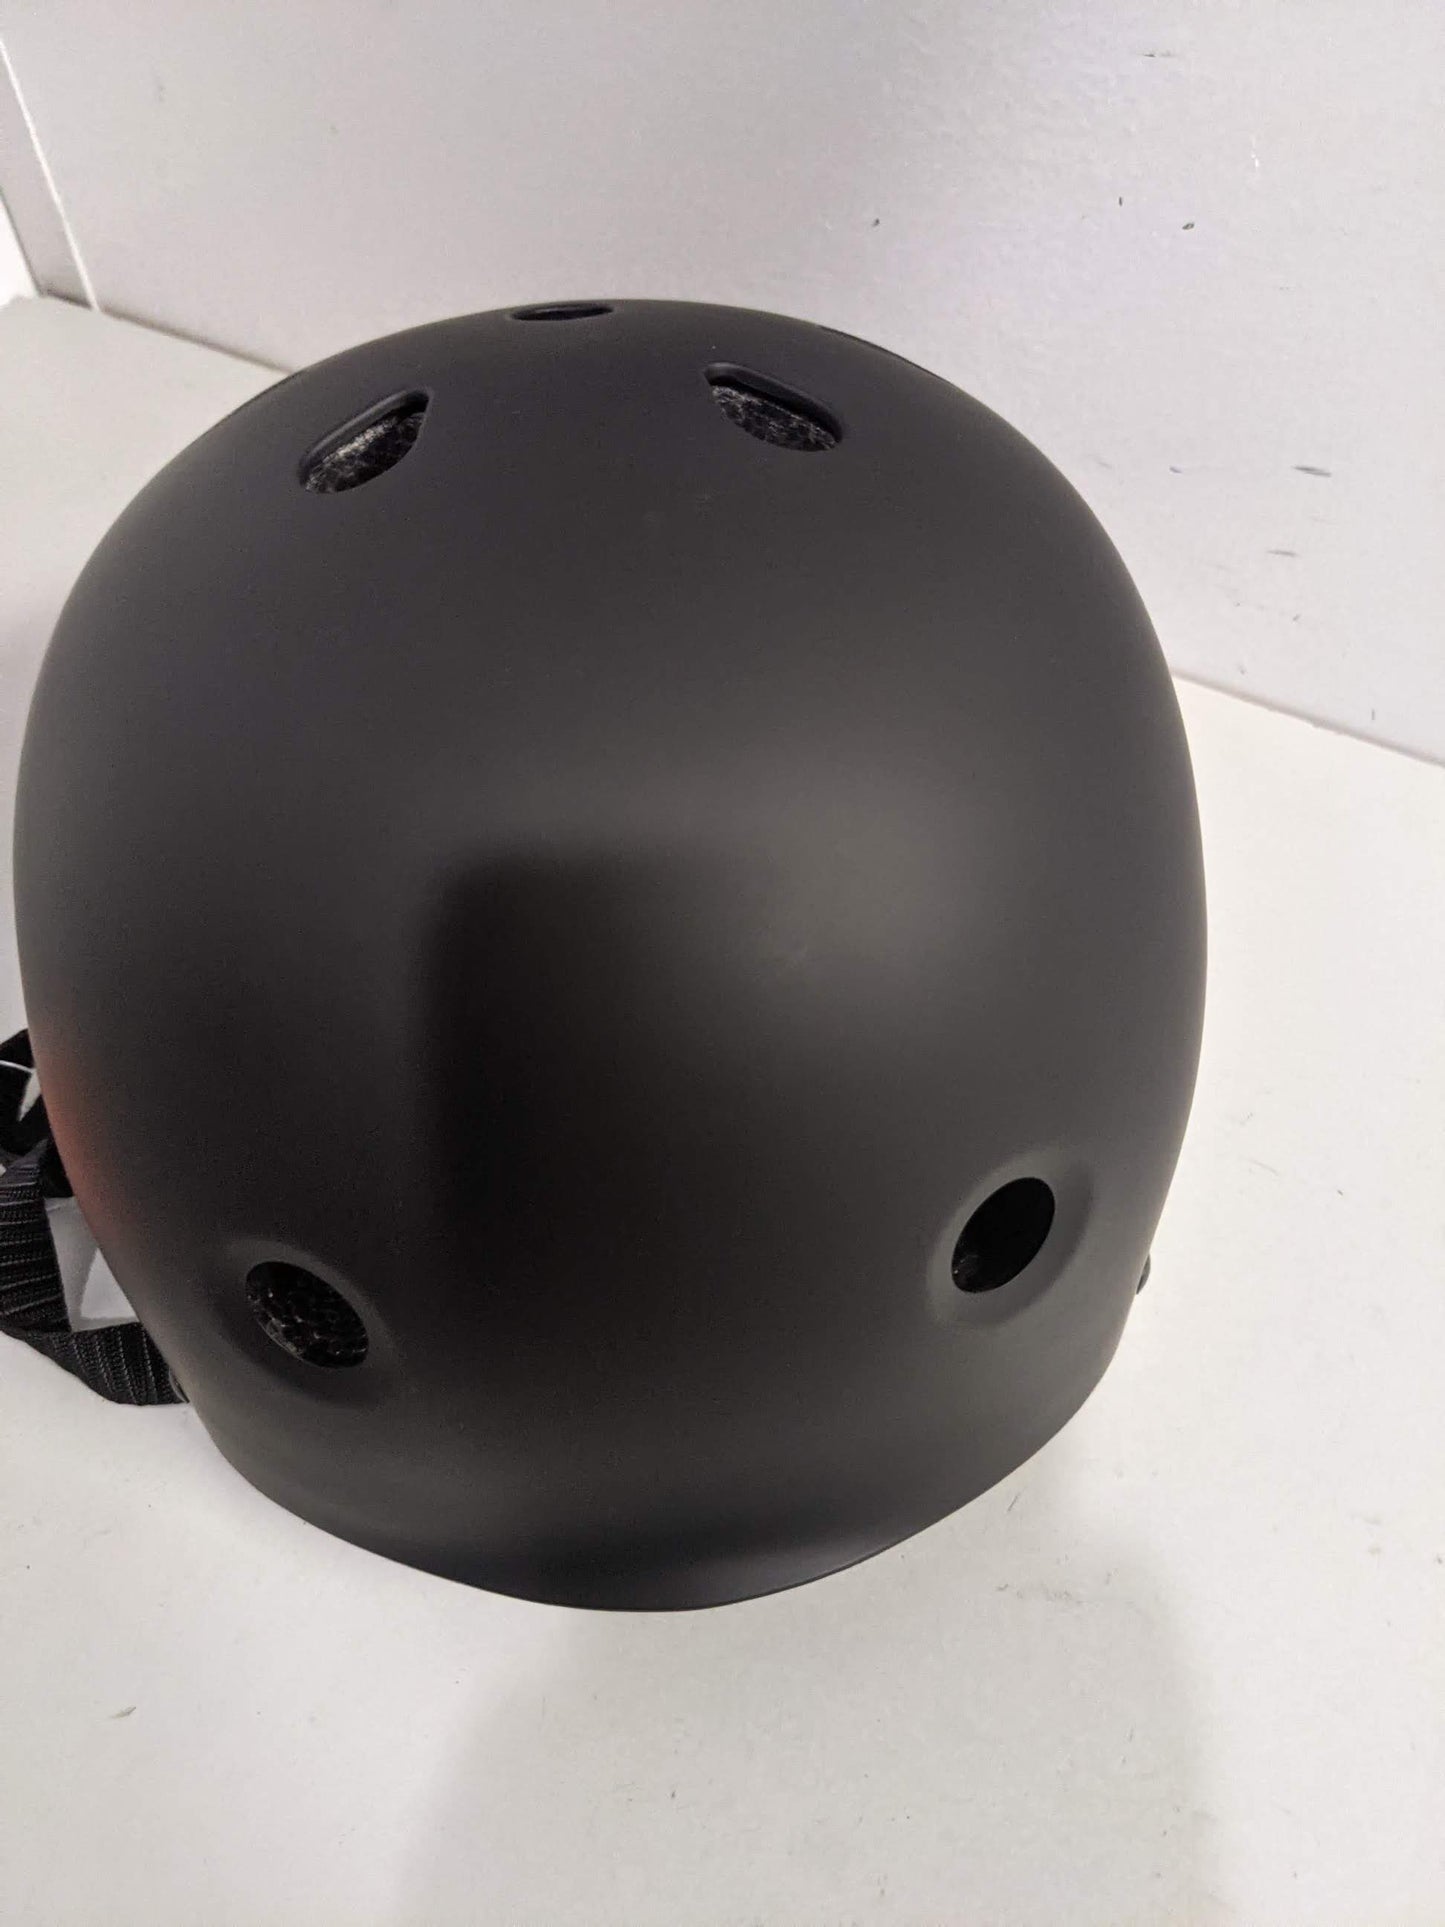 Retrospec CM-2 Bike Helmet Condition New Size S 51-55 cm Color Black